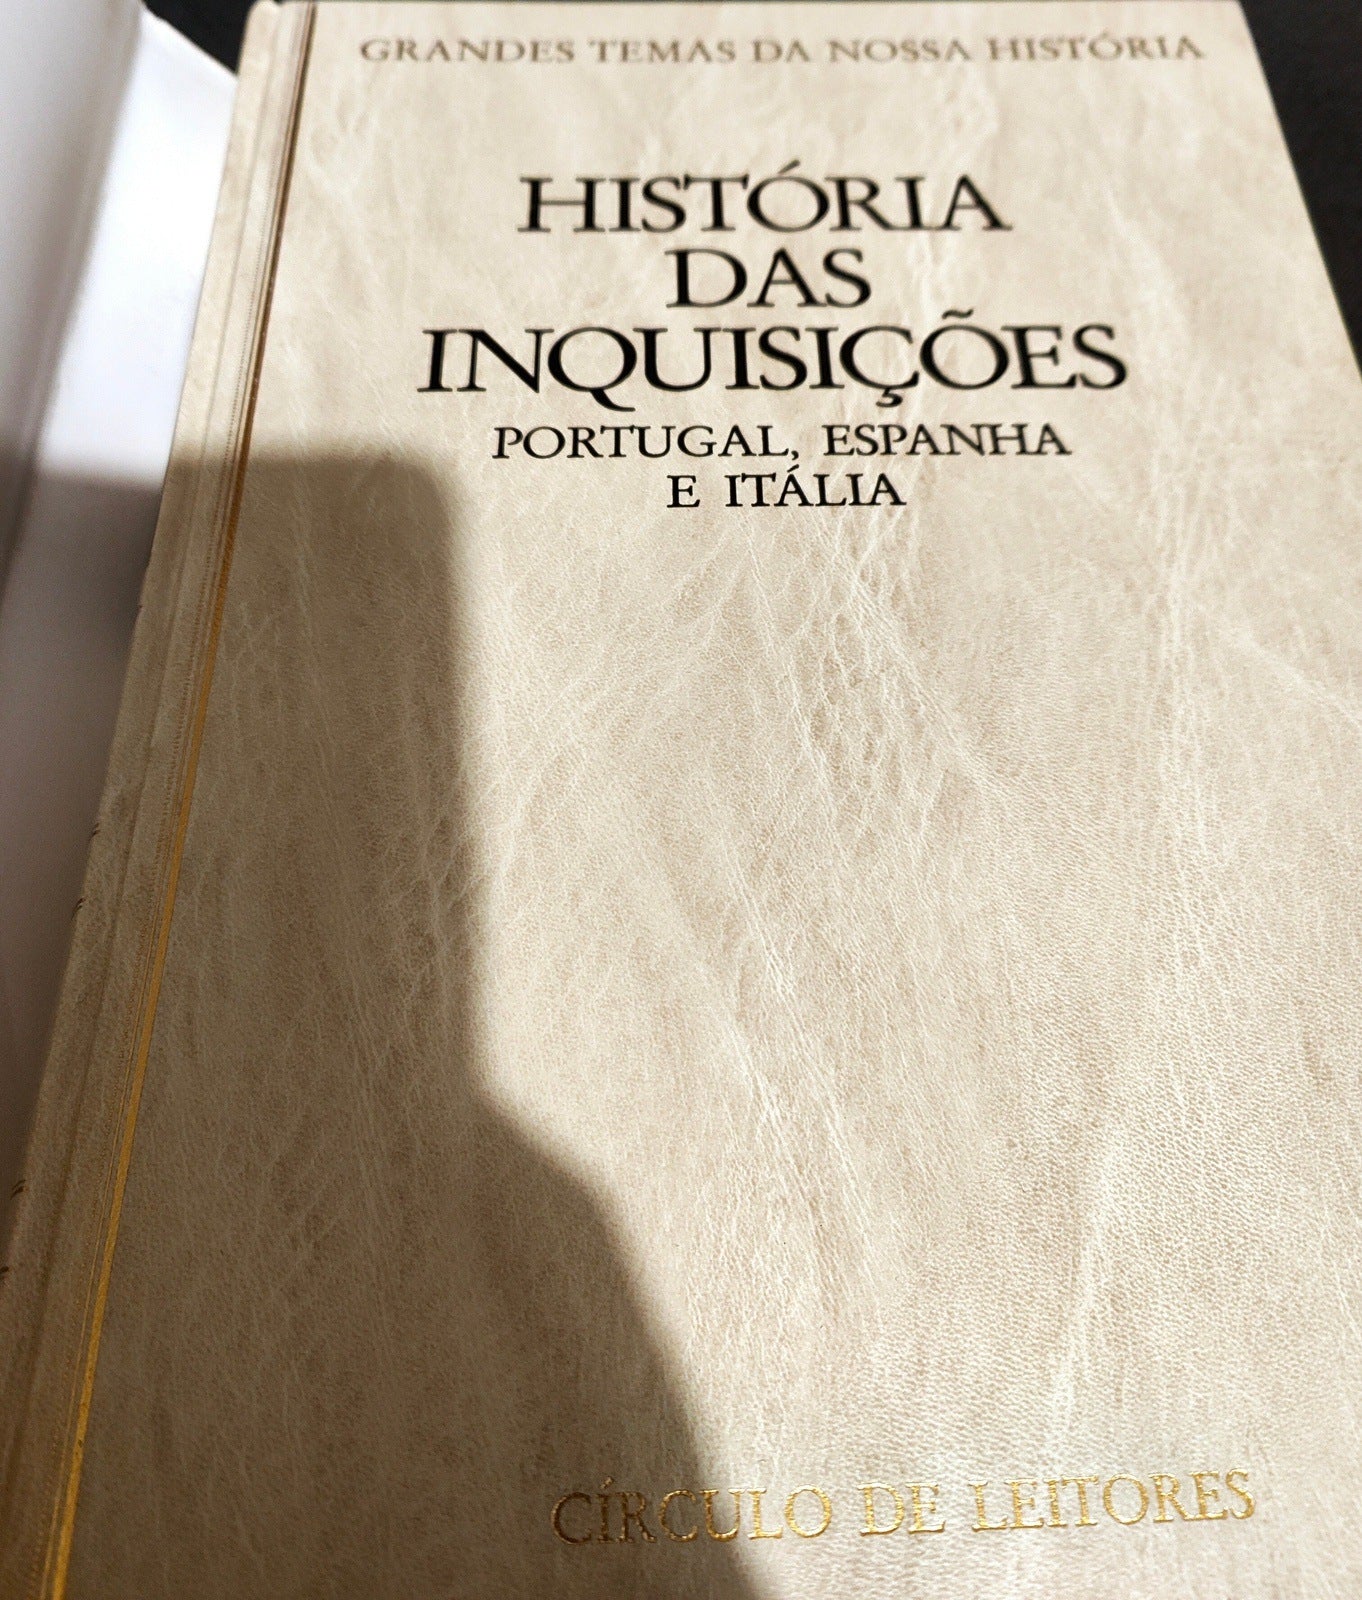 LIVRO História das Inquisições : Portugal, Espanha e Itália / Francisco Bethencourt; cartogr. Fernando Pardal Capa Dura - USADO